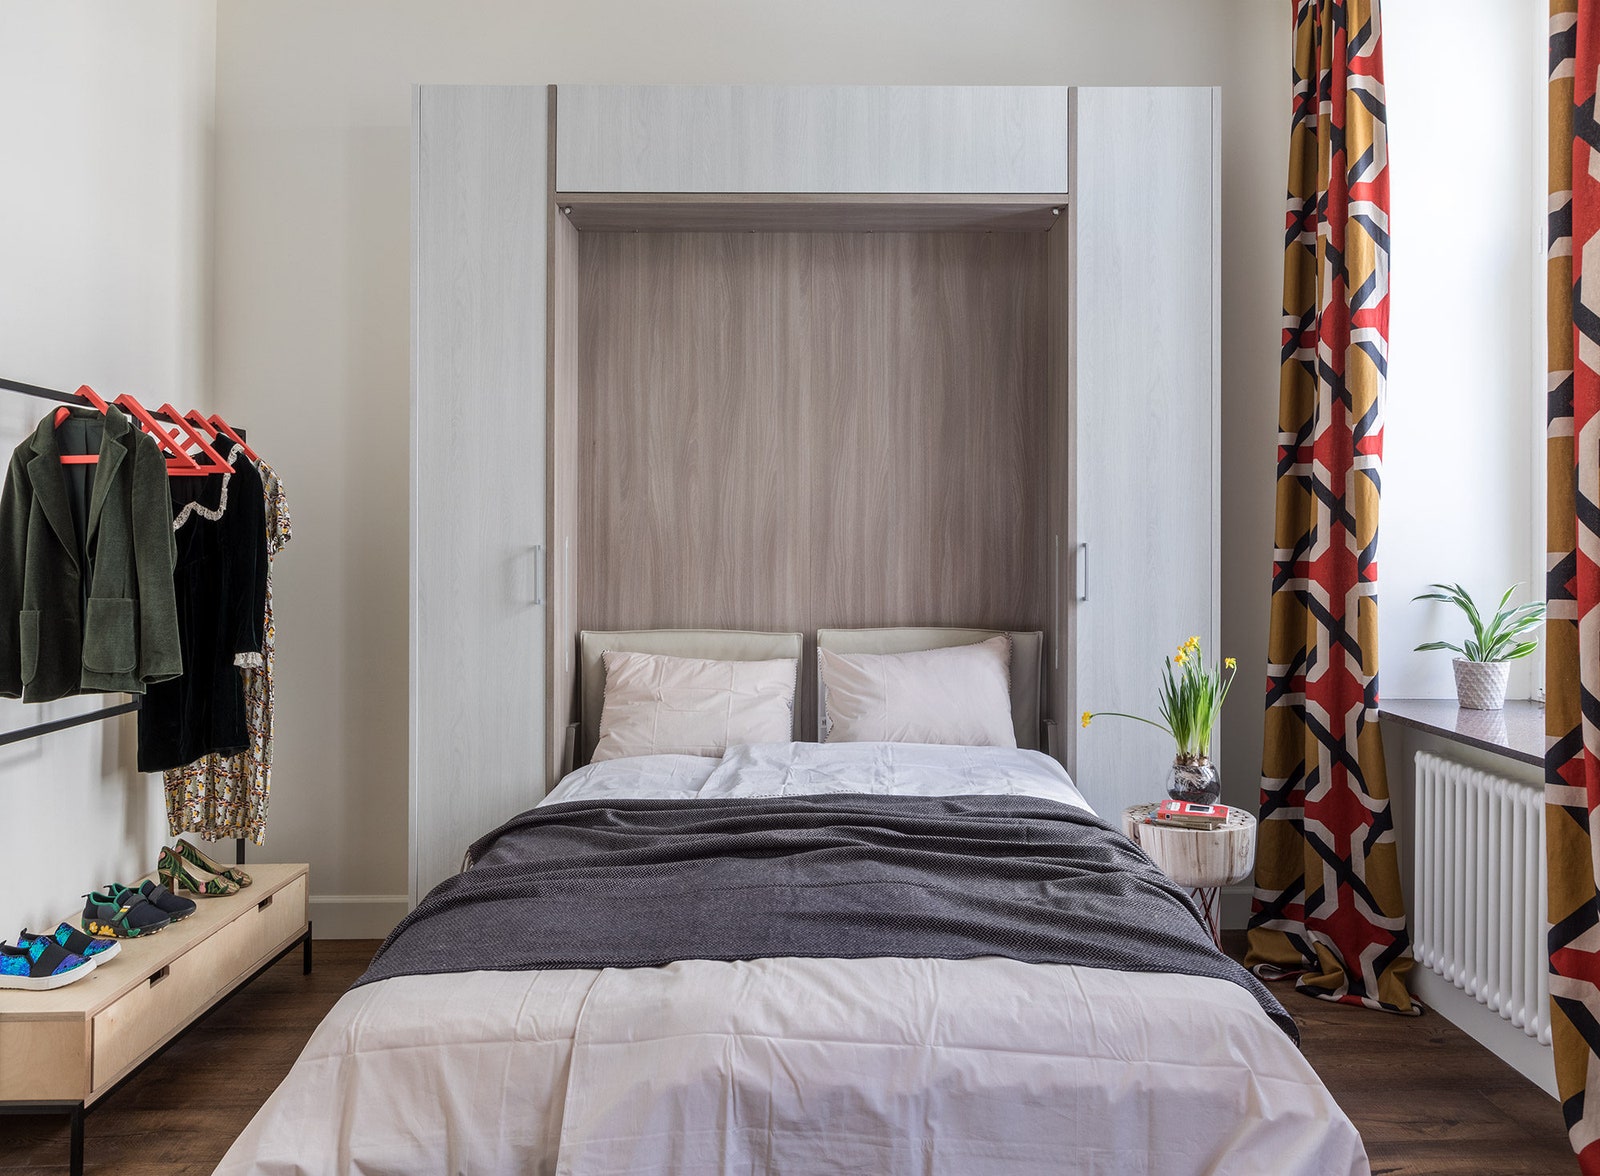 Спальня в квартире по проекту Марины Хлызовой. Фото Михаил Степанов стилист Юлия Чеботарь.